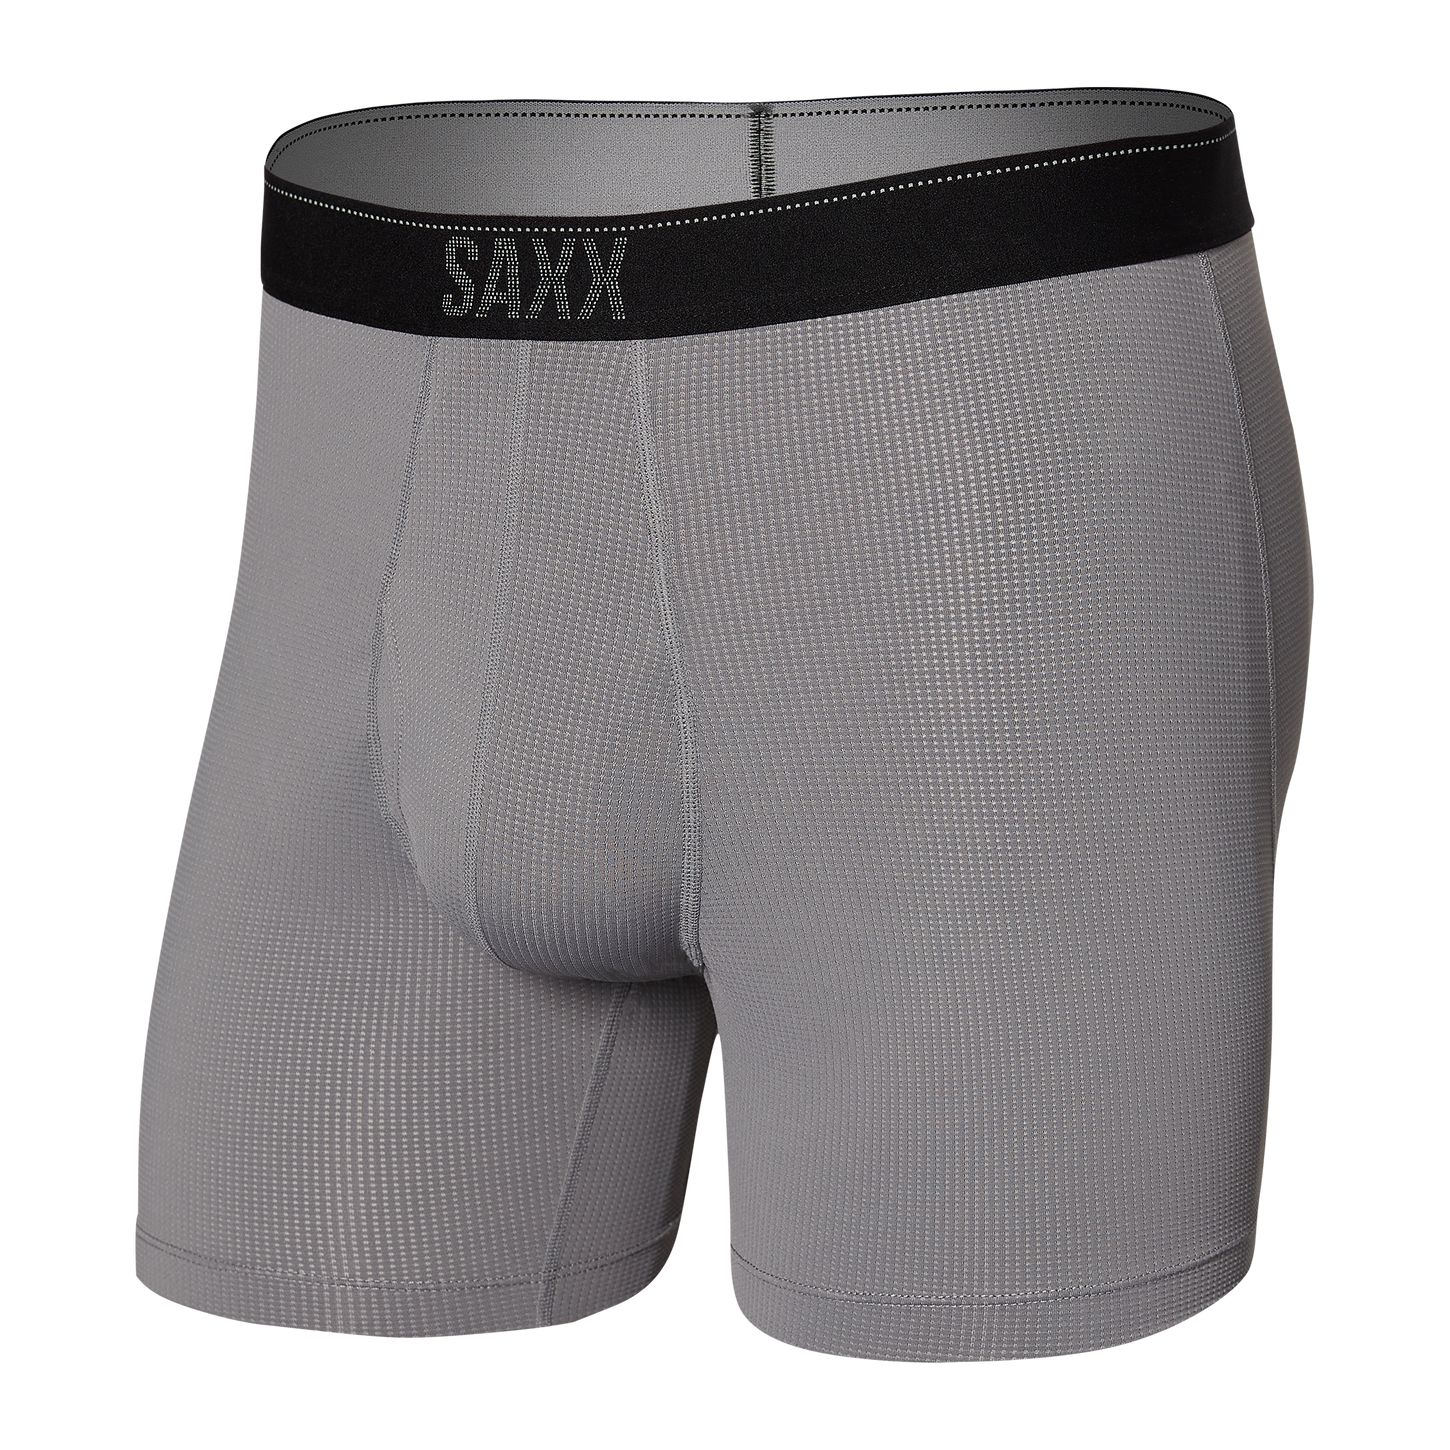 SAXX UNDERWEAR – Finnieston Clothing Ltd.